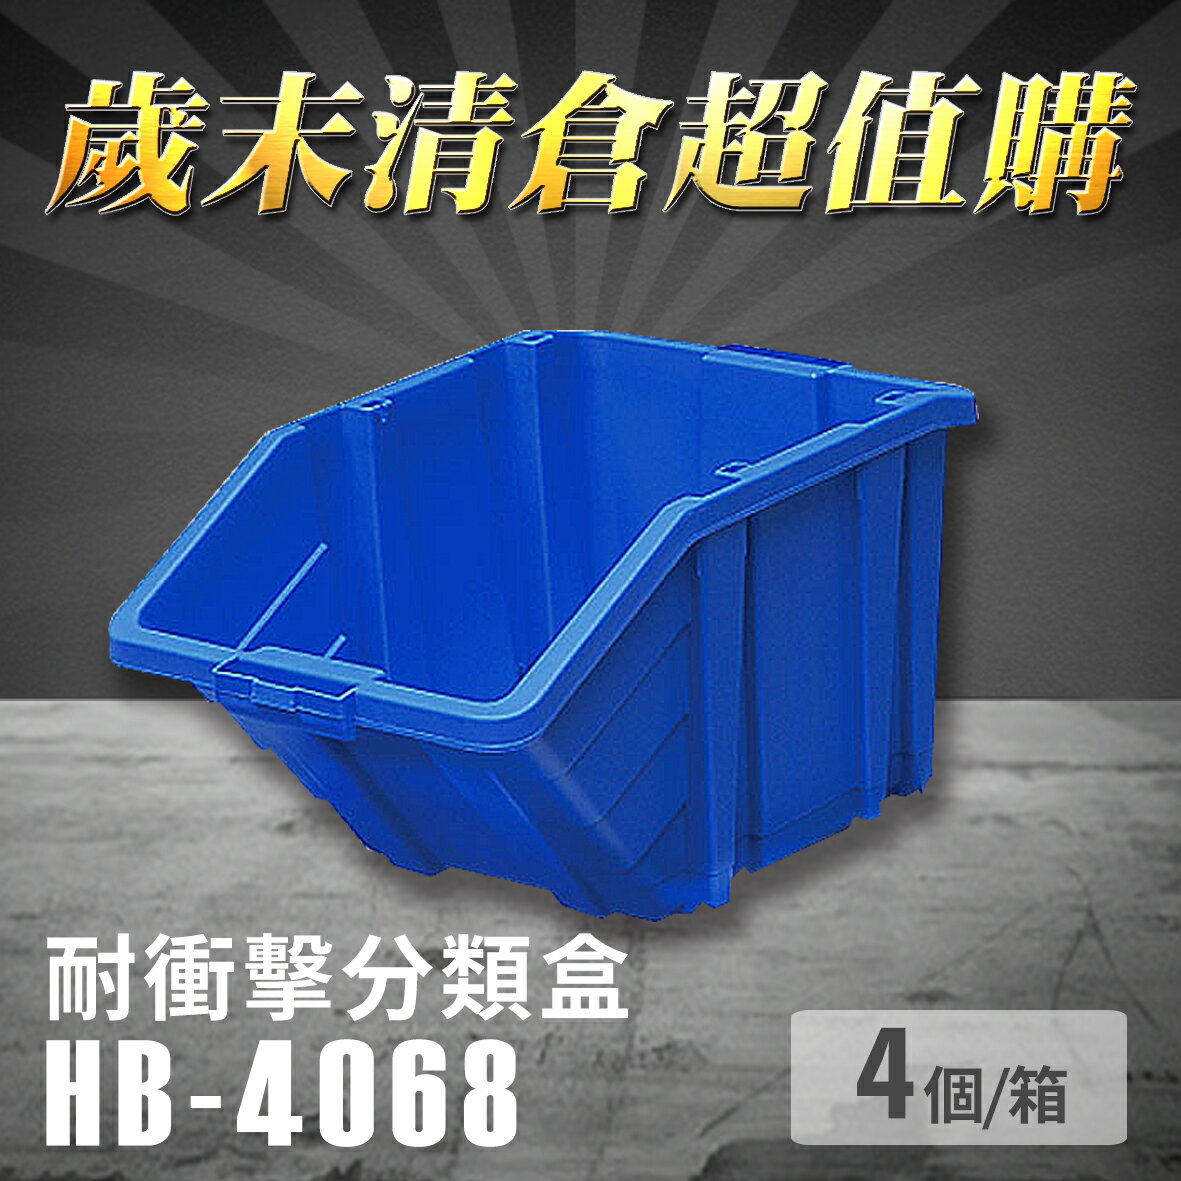 【耐衝擊分類整理盒】 耐衝擊 收納 置物 工具盒 零件盒 樹德 HB-4068 (4個/箱)